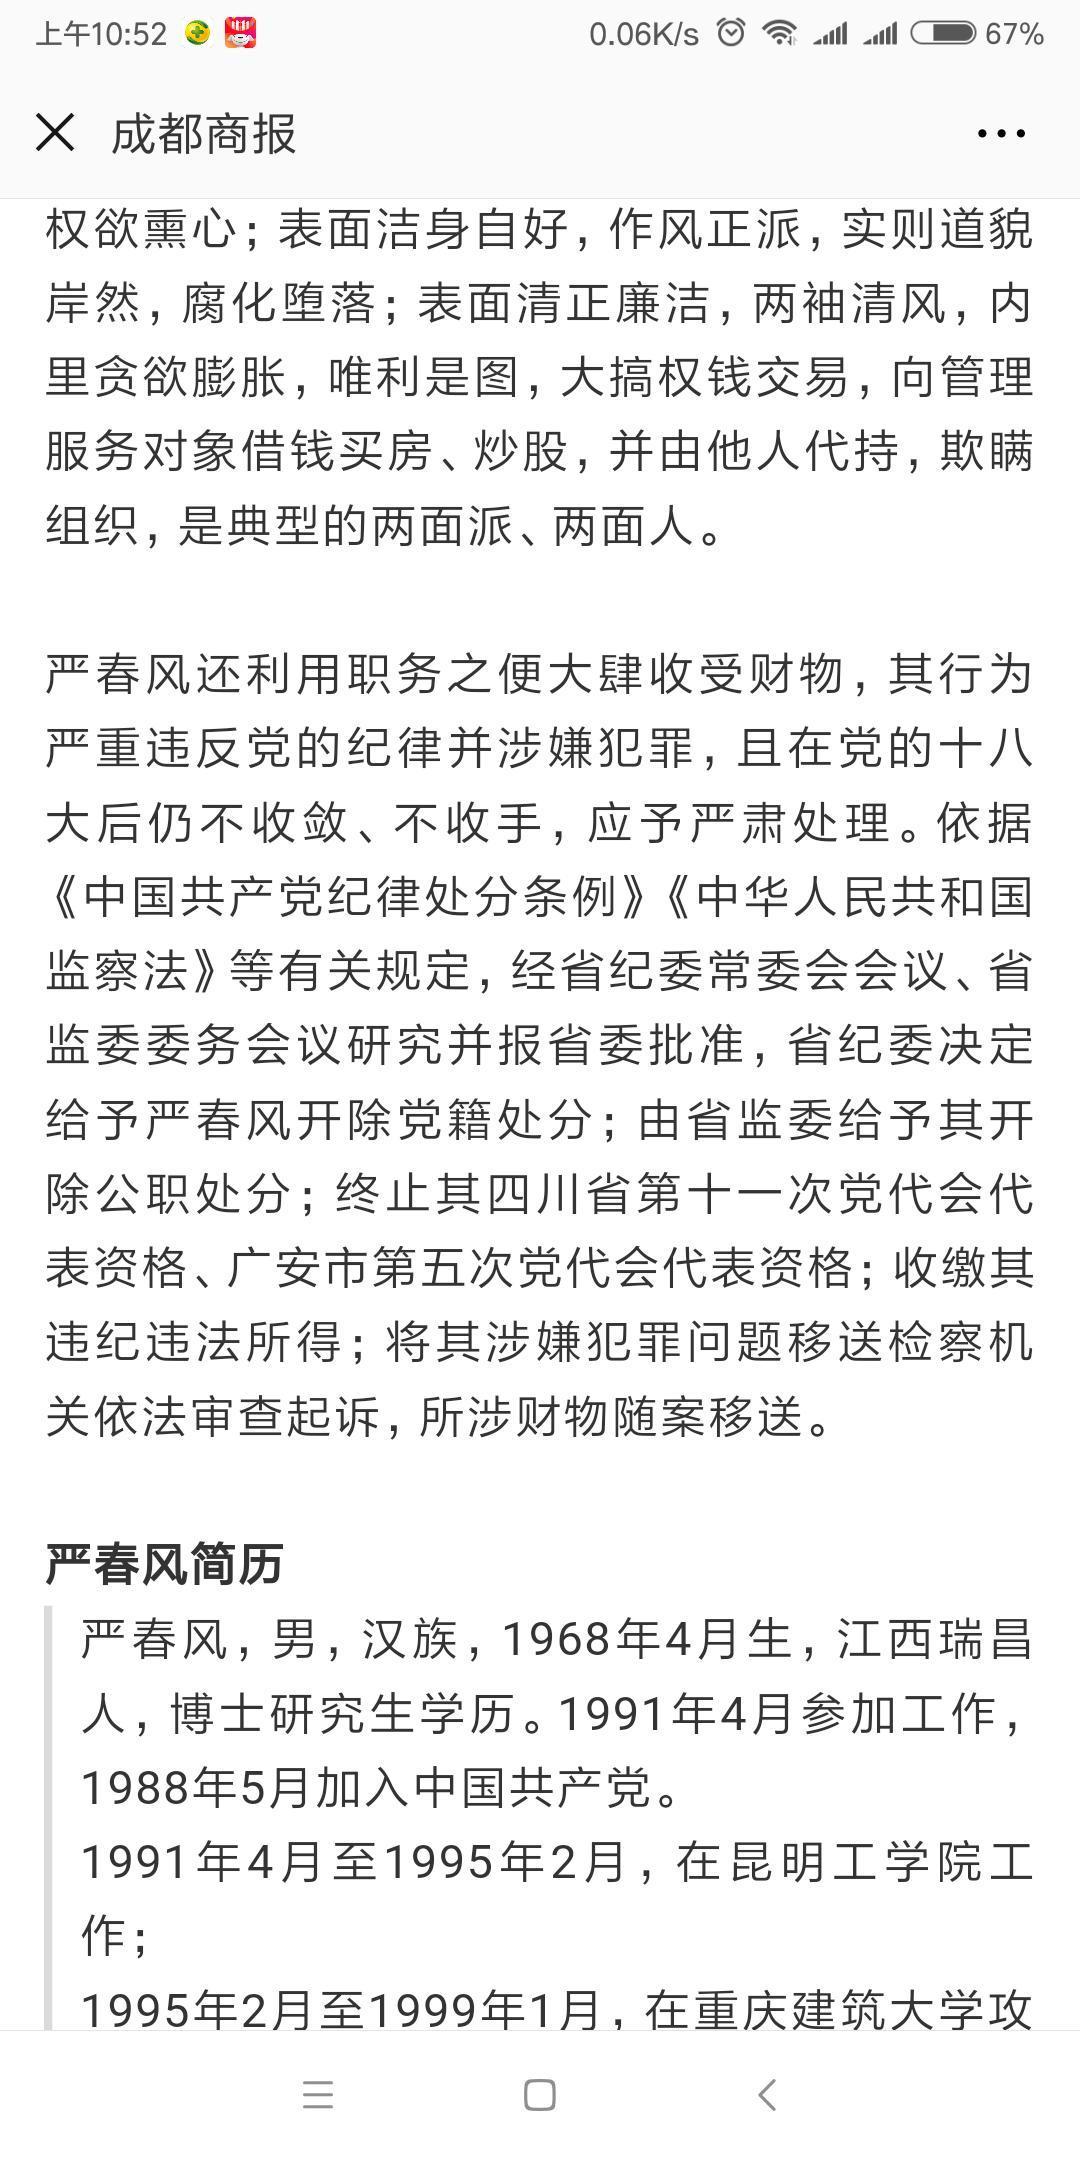 四川广安市委原副书记严春风被开除党籍和公职